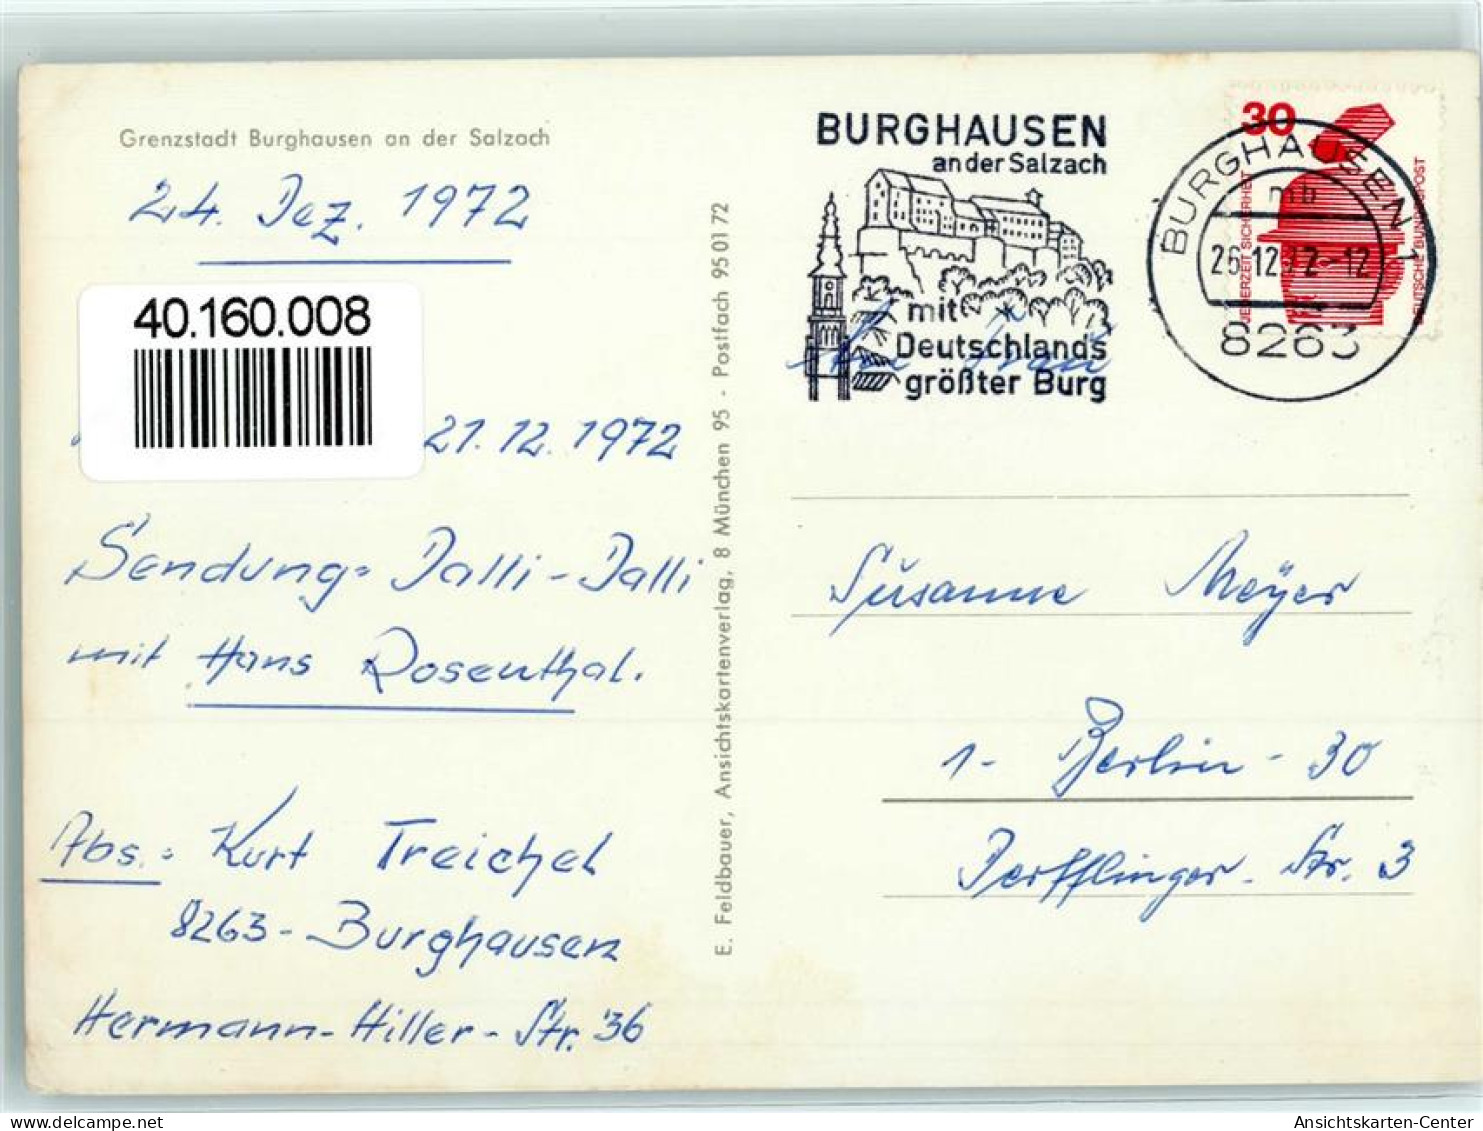 40160008 - Burghausen , Salzach - Burghausen